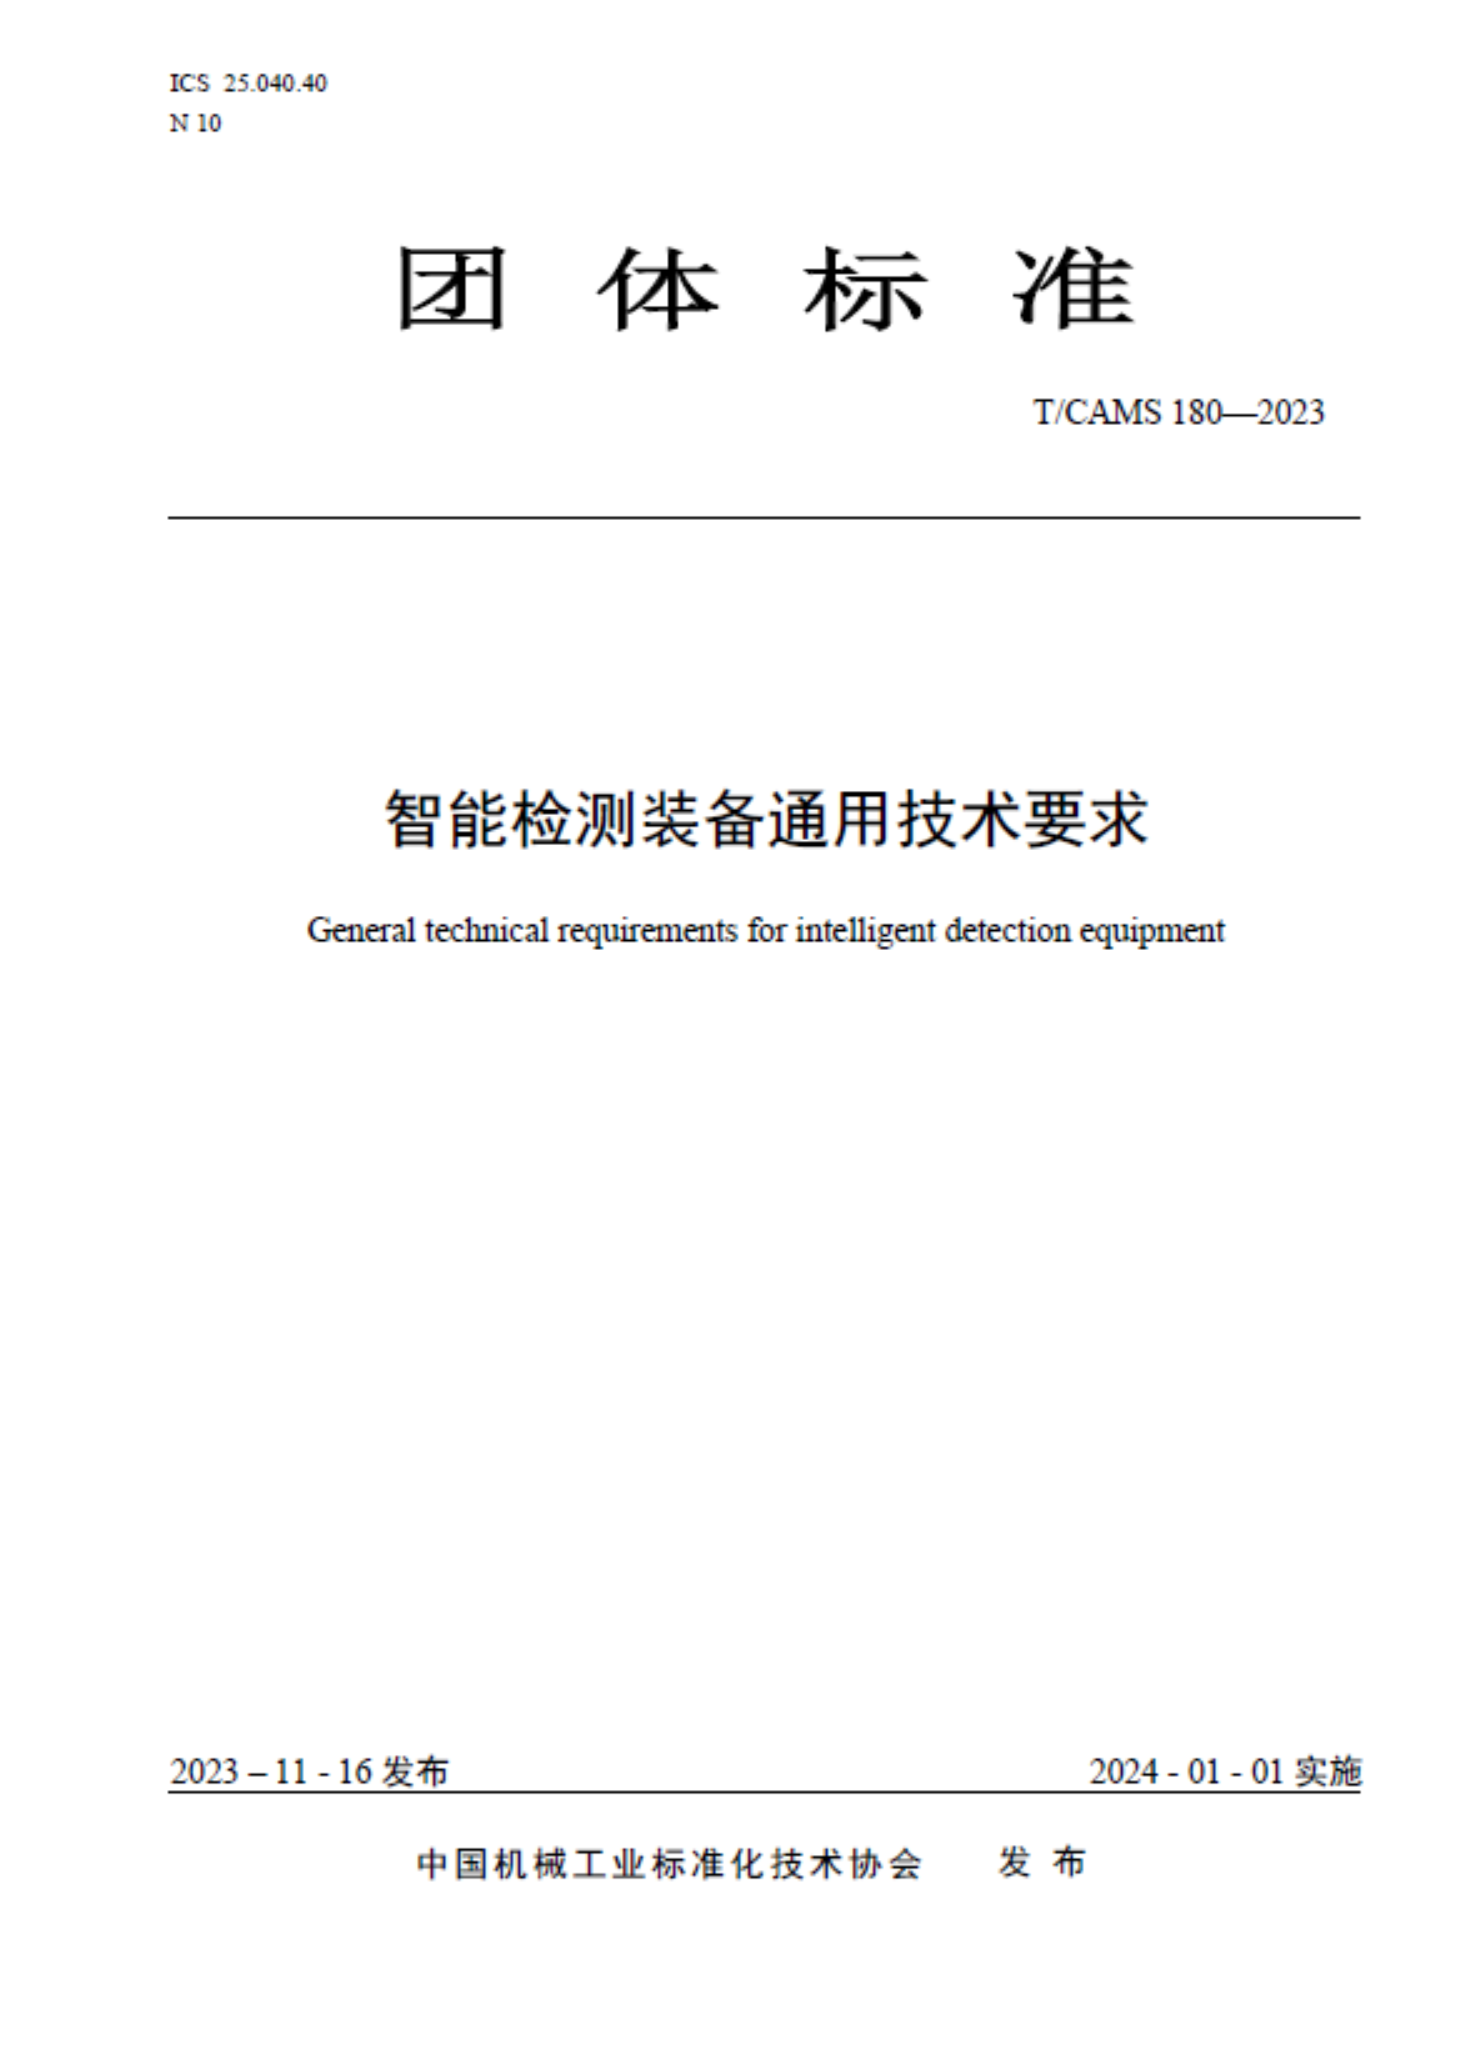 《智能检测装备通用技术要求》团体标准在京发布